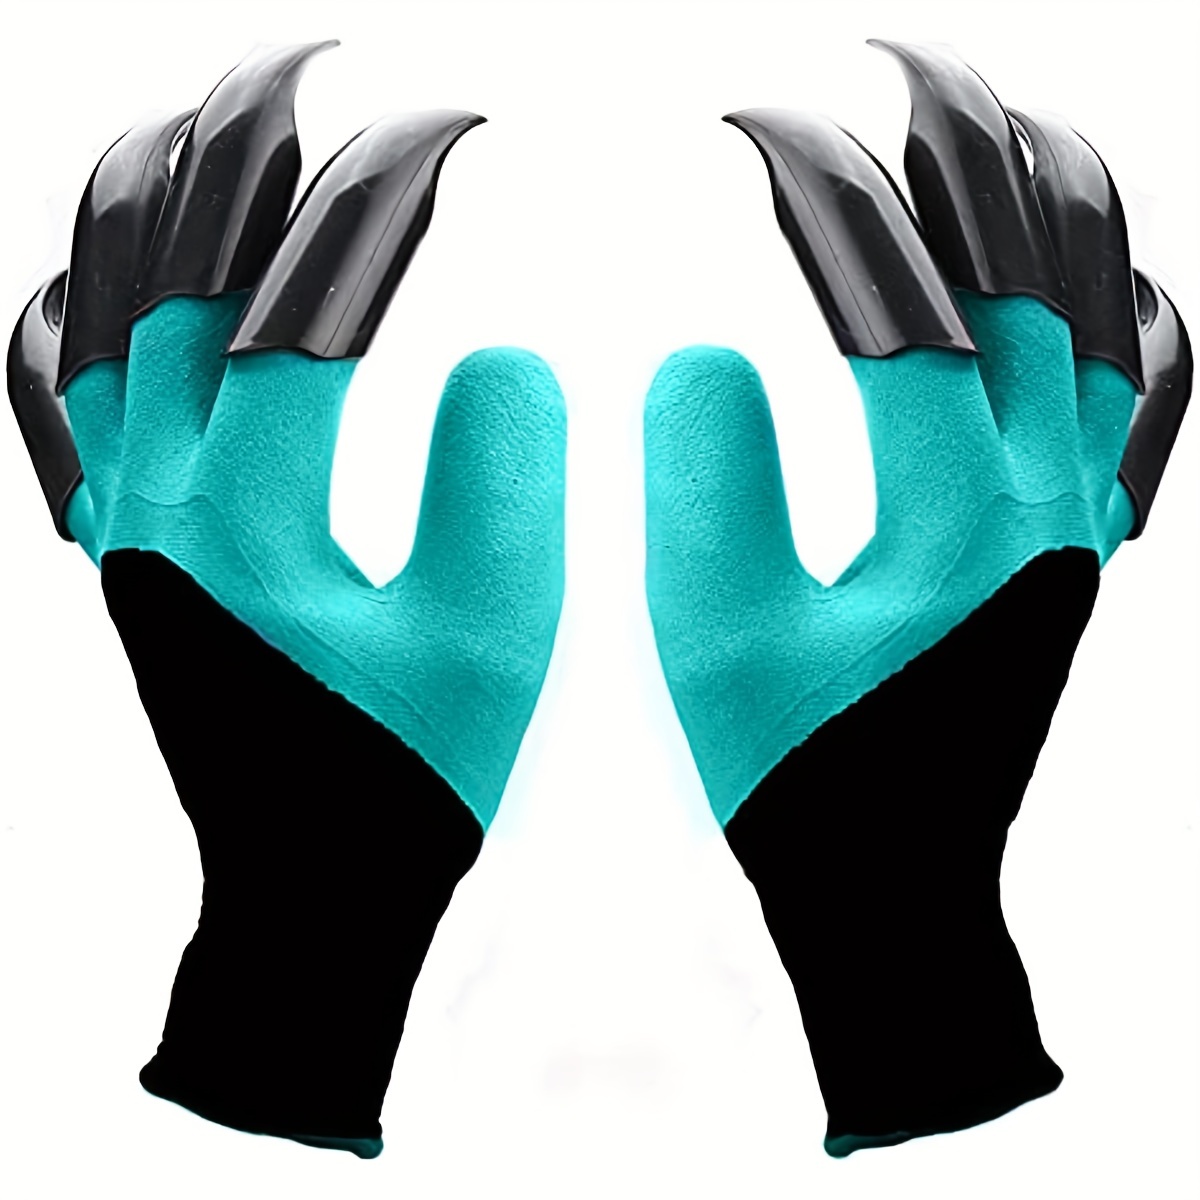 Les meilleurs gants de protection pour jardiner